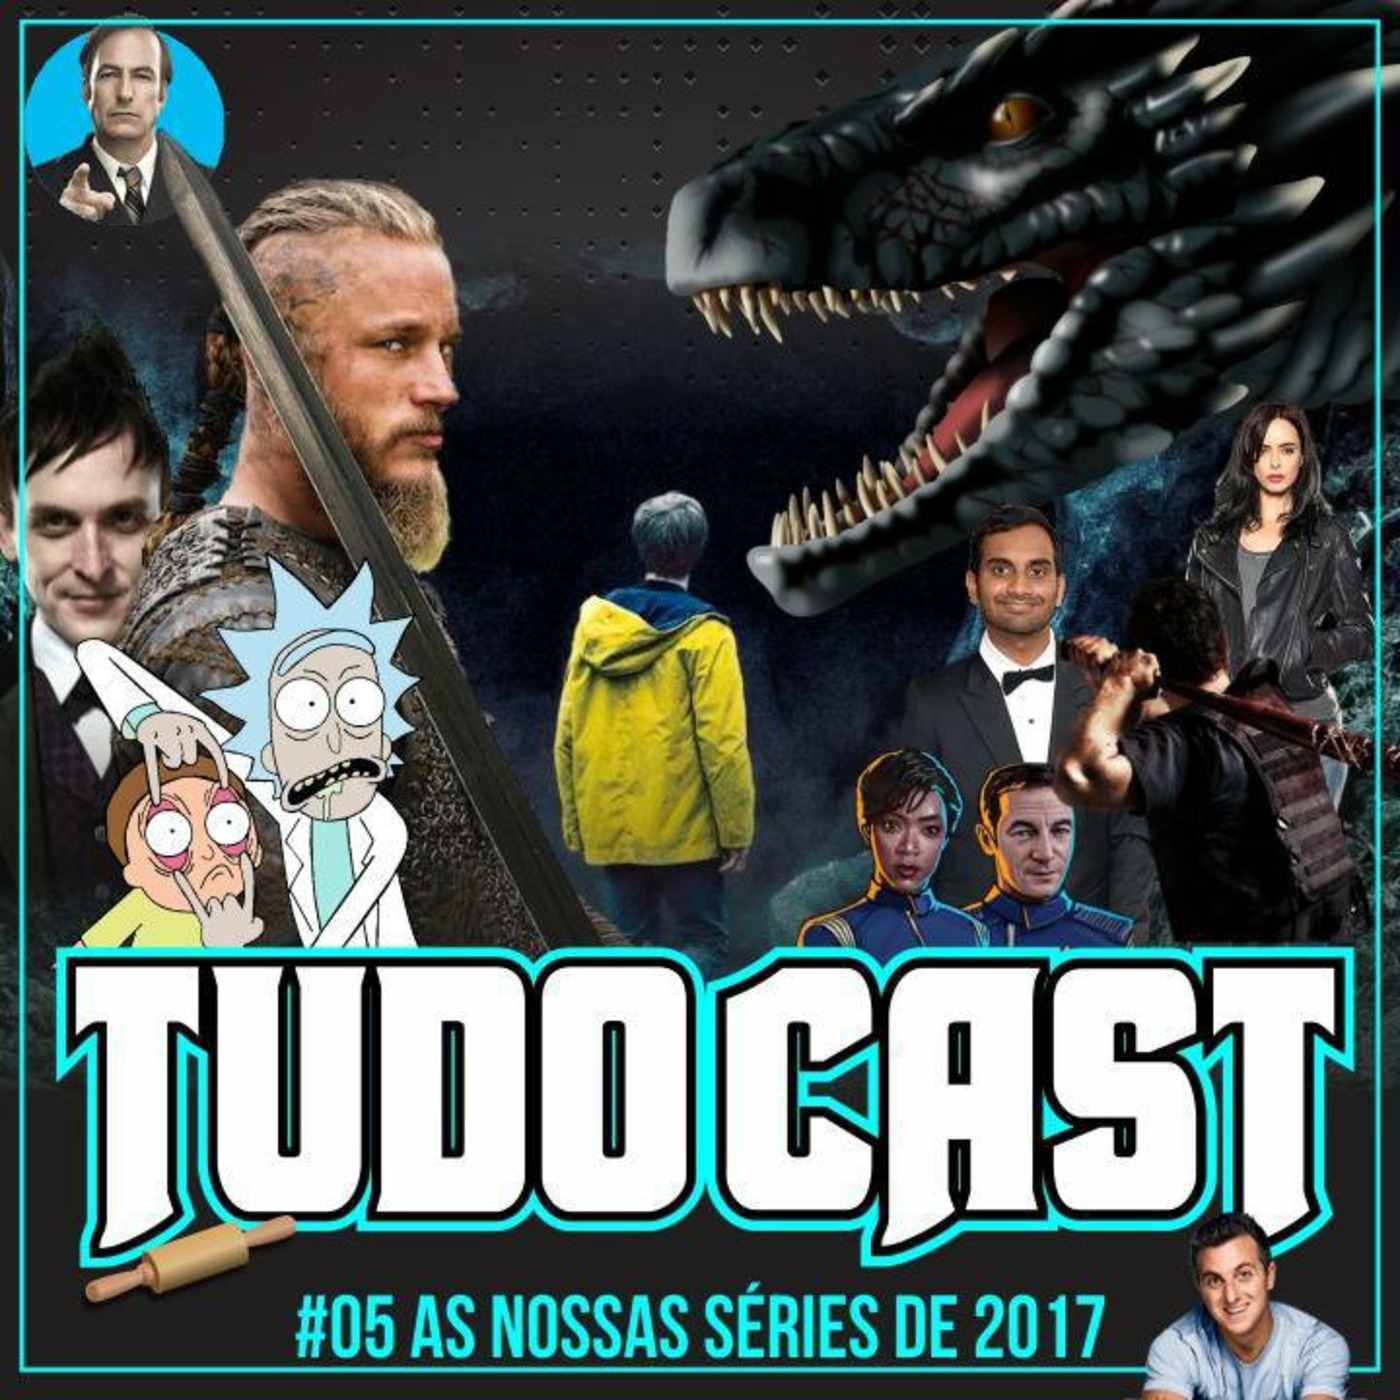 TudoCast #005 - As nossas séries de 2017